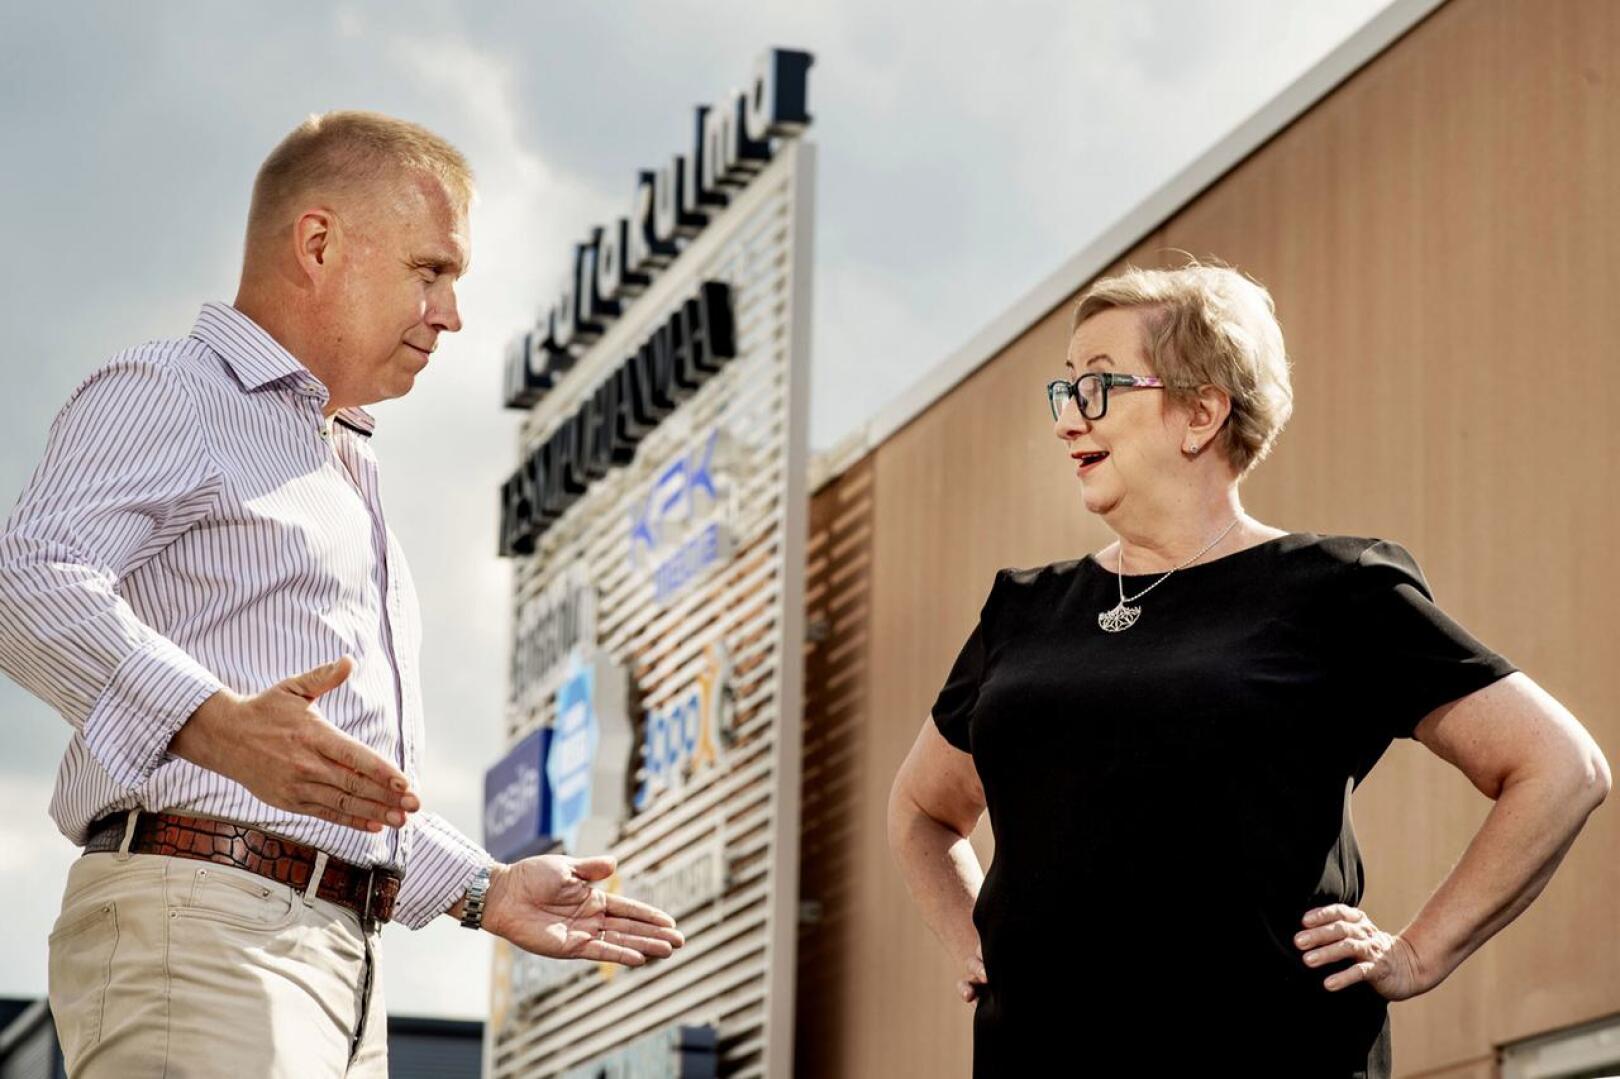 Keskipohjanmaan toimittaja Kristian Sundqvist ja päätoimittaja Tiina Ojutkangas luotsaavat suoraa vaalilähetystä 13.6. klo 19.30 alkaen.